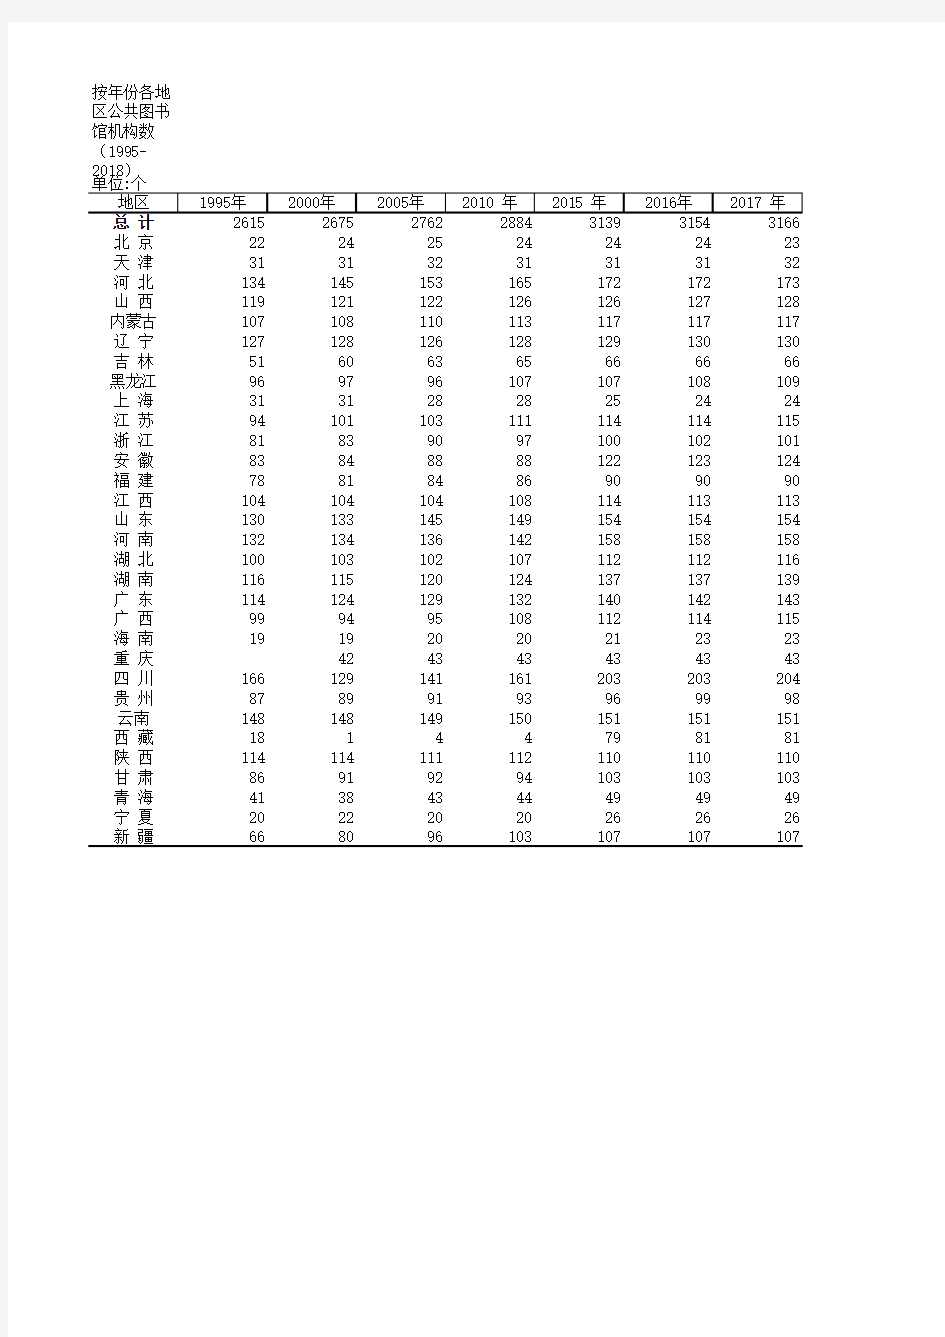 中国文化旅游统计年鉴数据：按年份各地区公共图书馆机构数(1995-2018)